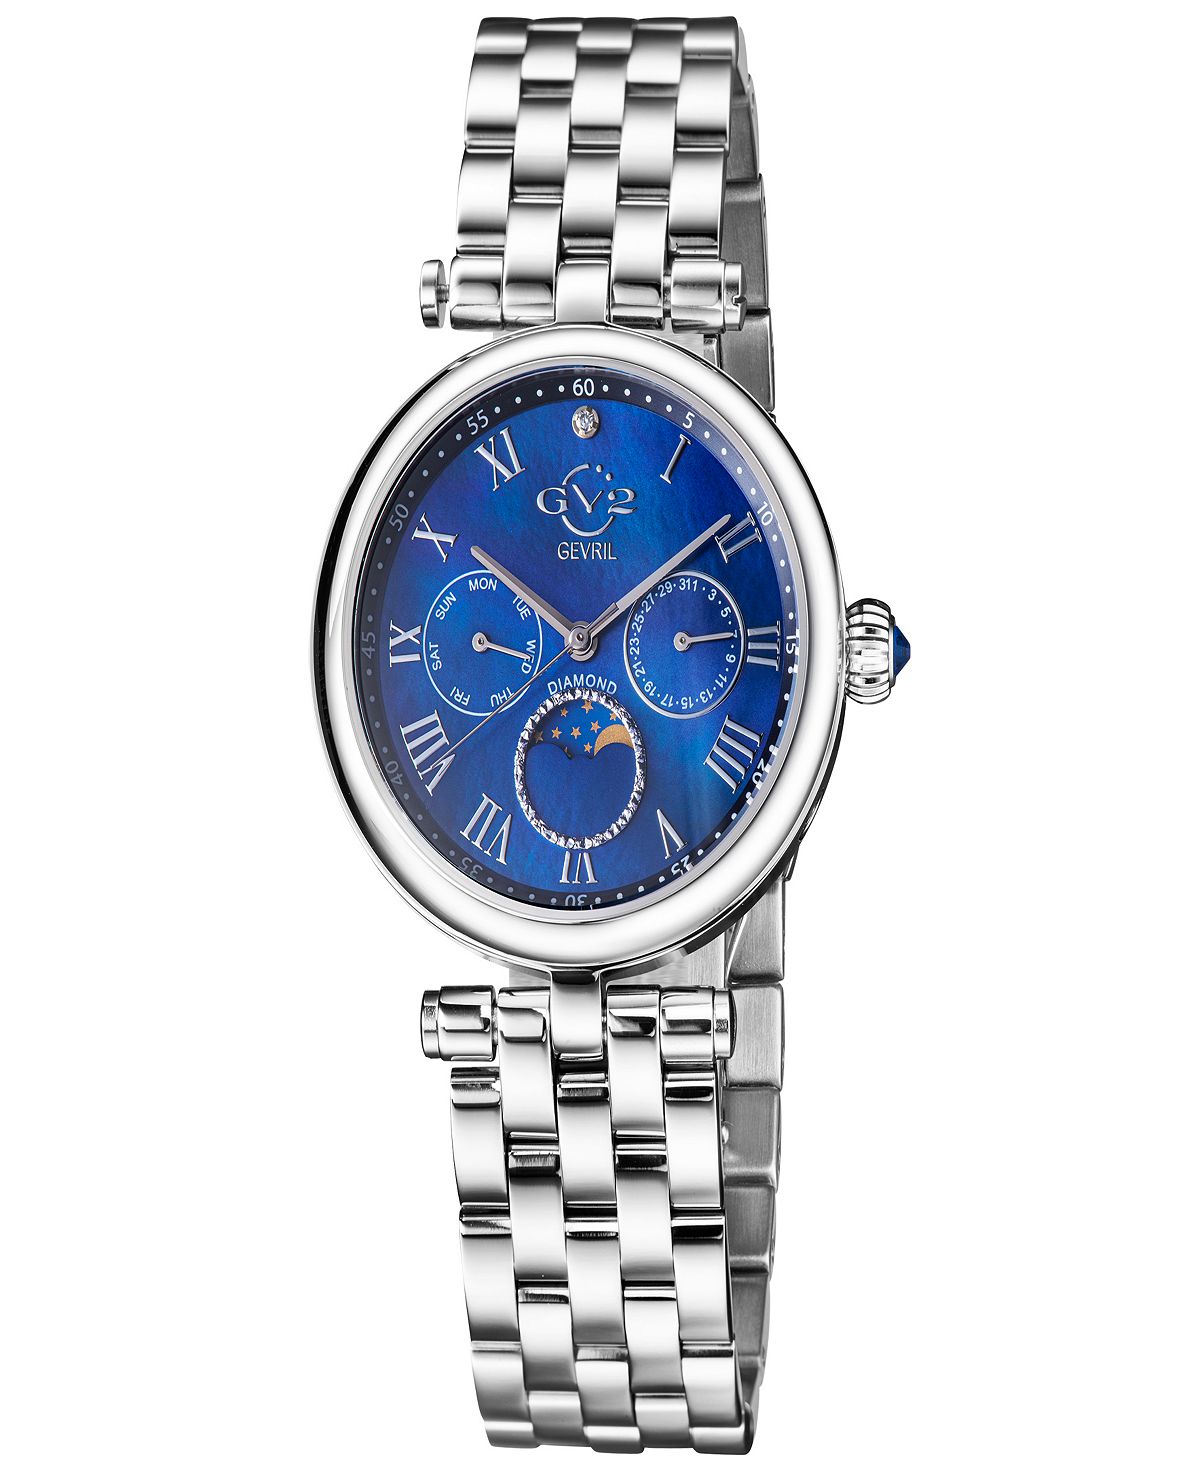 Женские часы Florence швейцарские кварцевые серебристого цвета с браслетом из нержавеющей стали 36 мм Gevril женские часы q серебристого цвета с браслетом из нержавеющей стали 36 мм timex